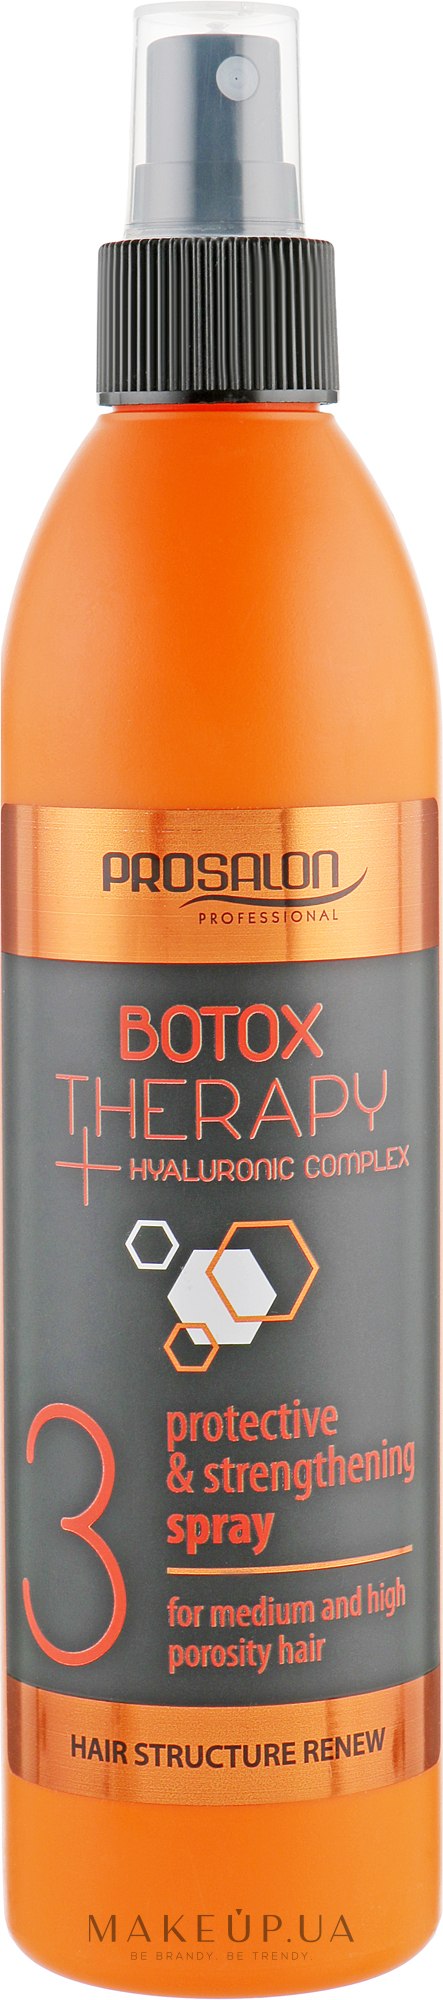 Антивіковий спрей для волосся - Prosalon Botox Therapy Protective & Strengthening 3 Spray — фото 275ml